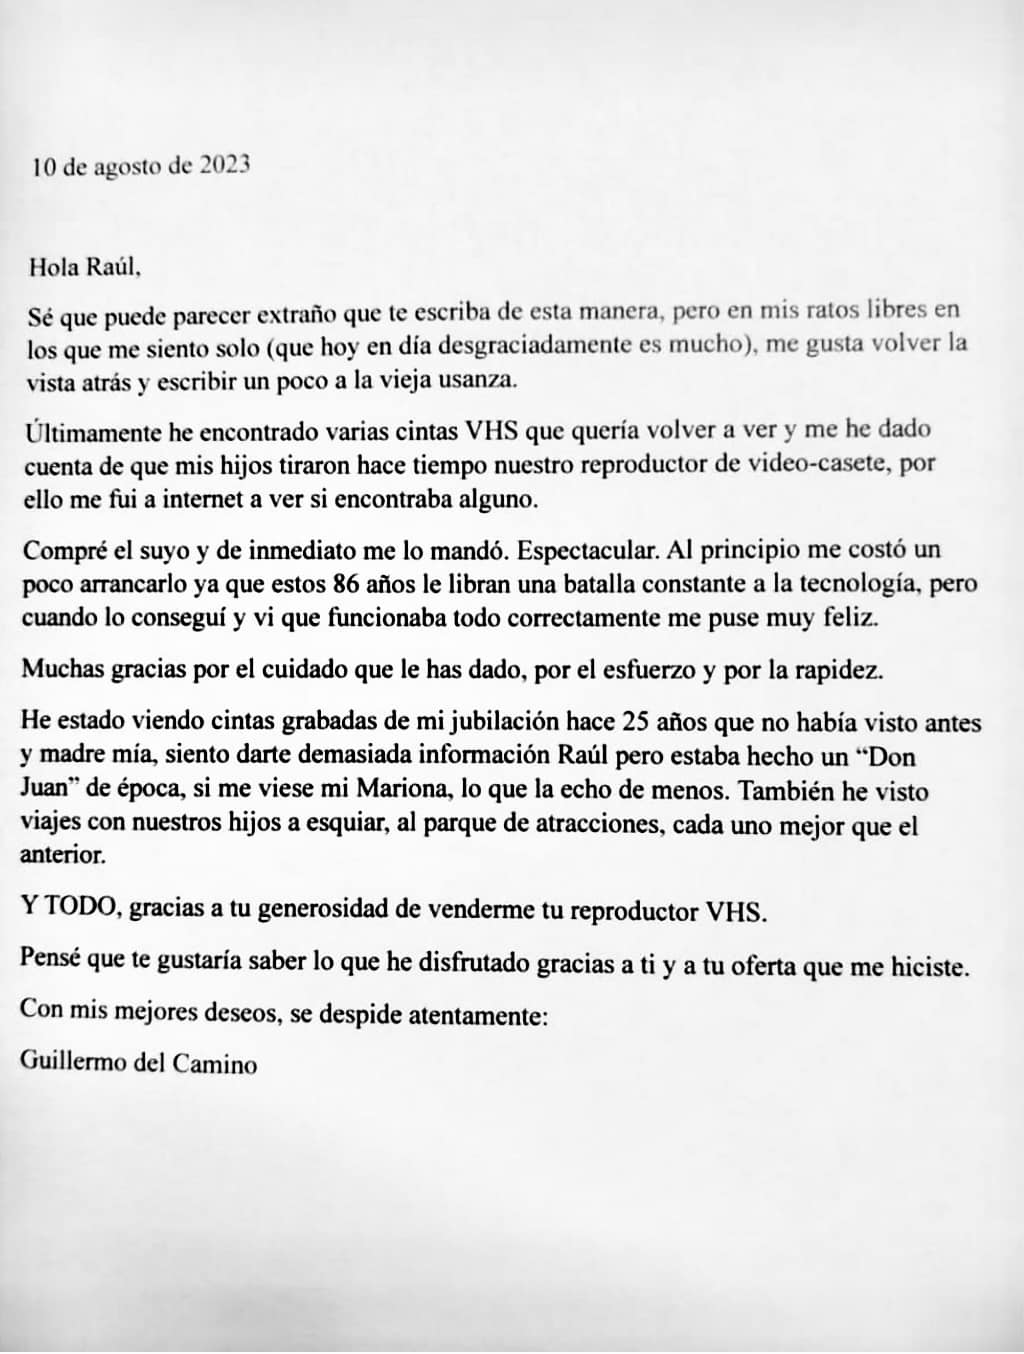 La emocionante carta de un abuelo a un usuario que le vendió su reproductor  de VHS: «Si me viese mi Mariona»